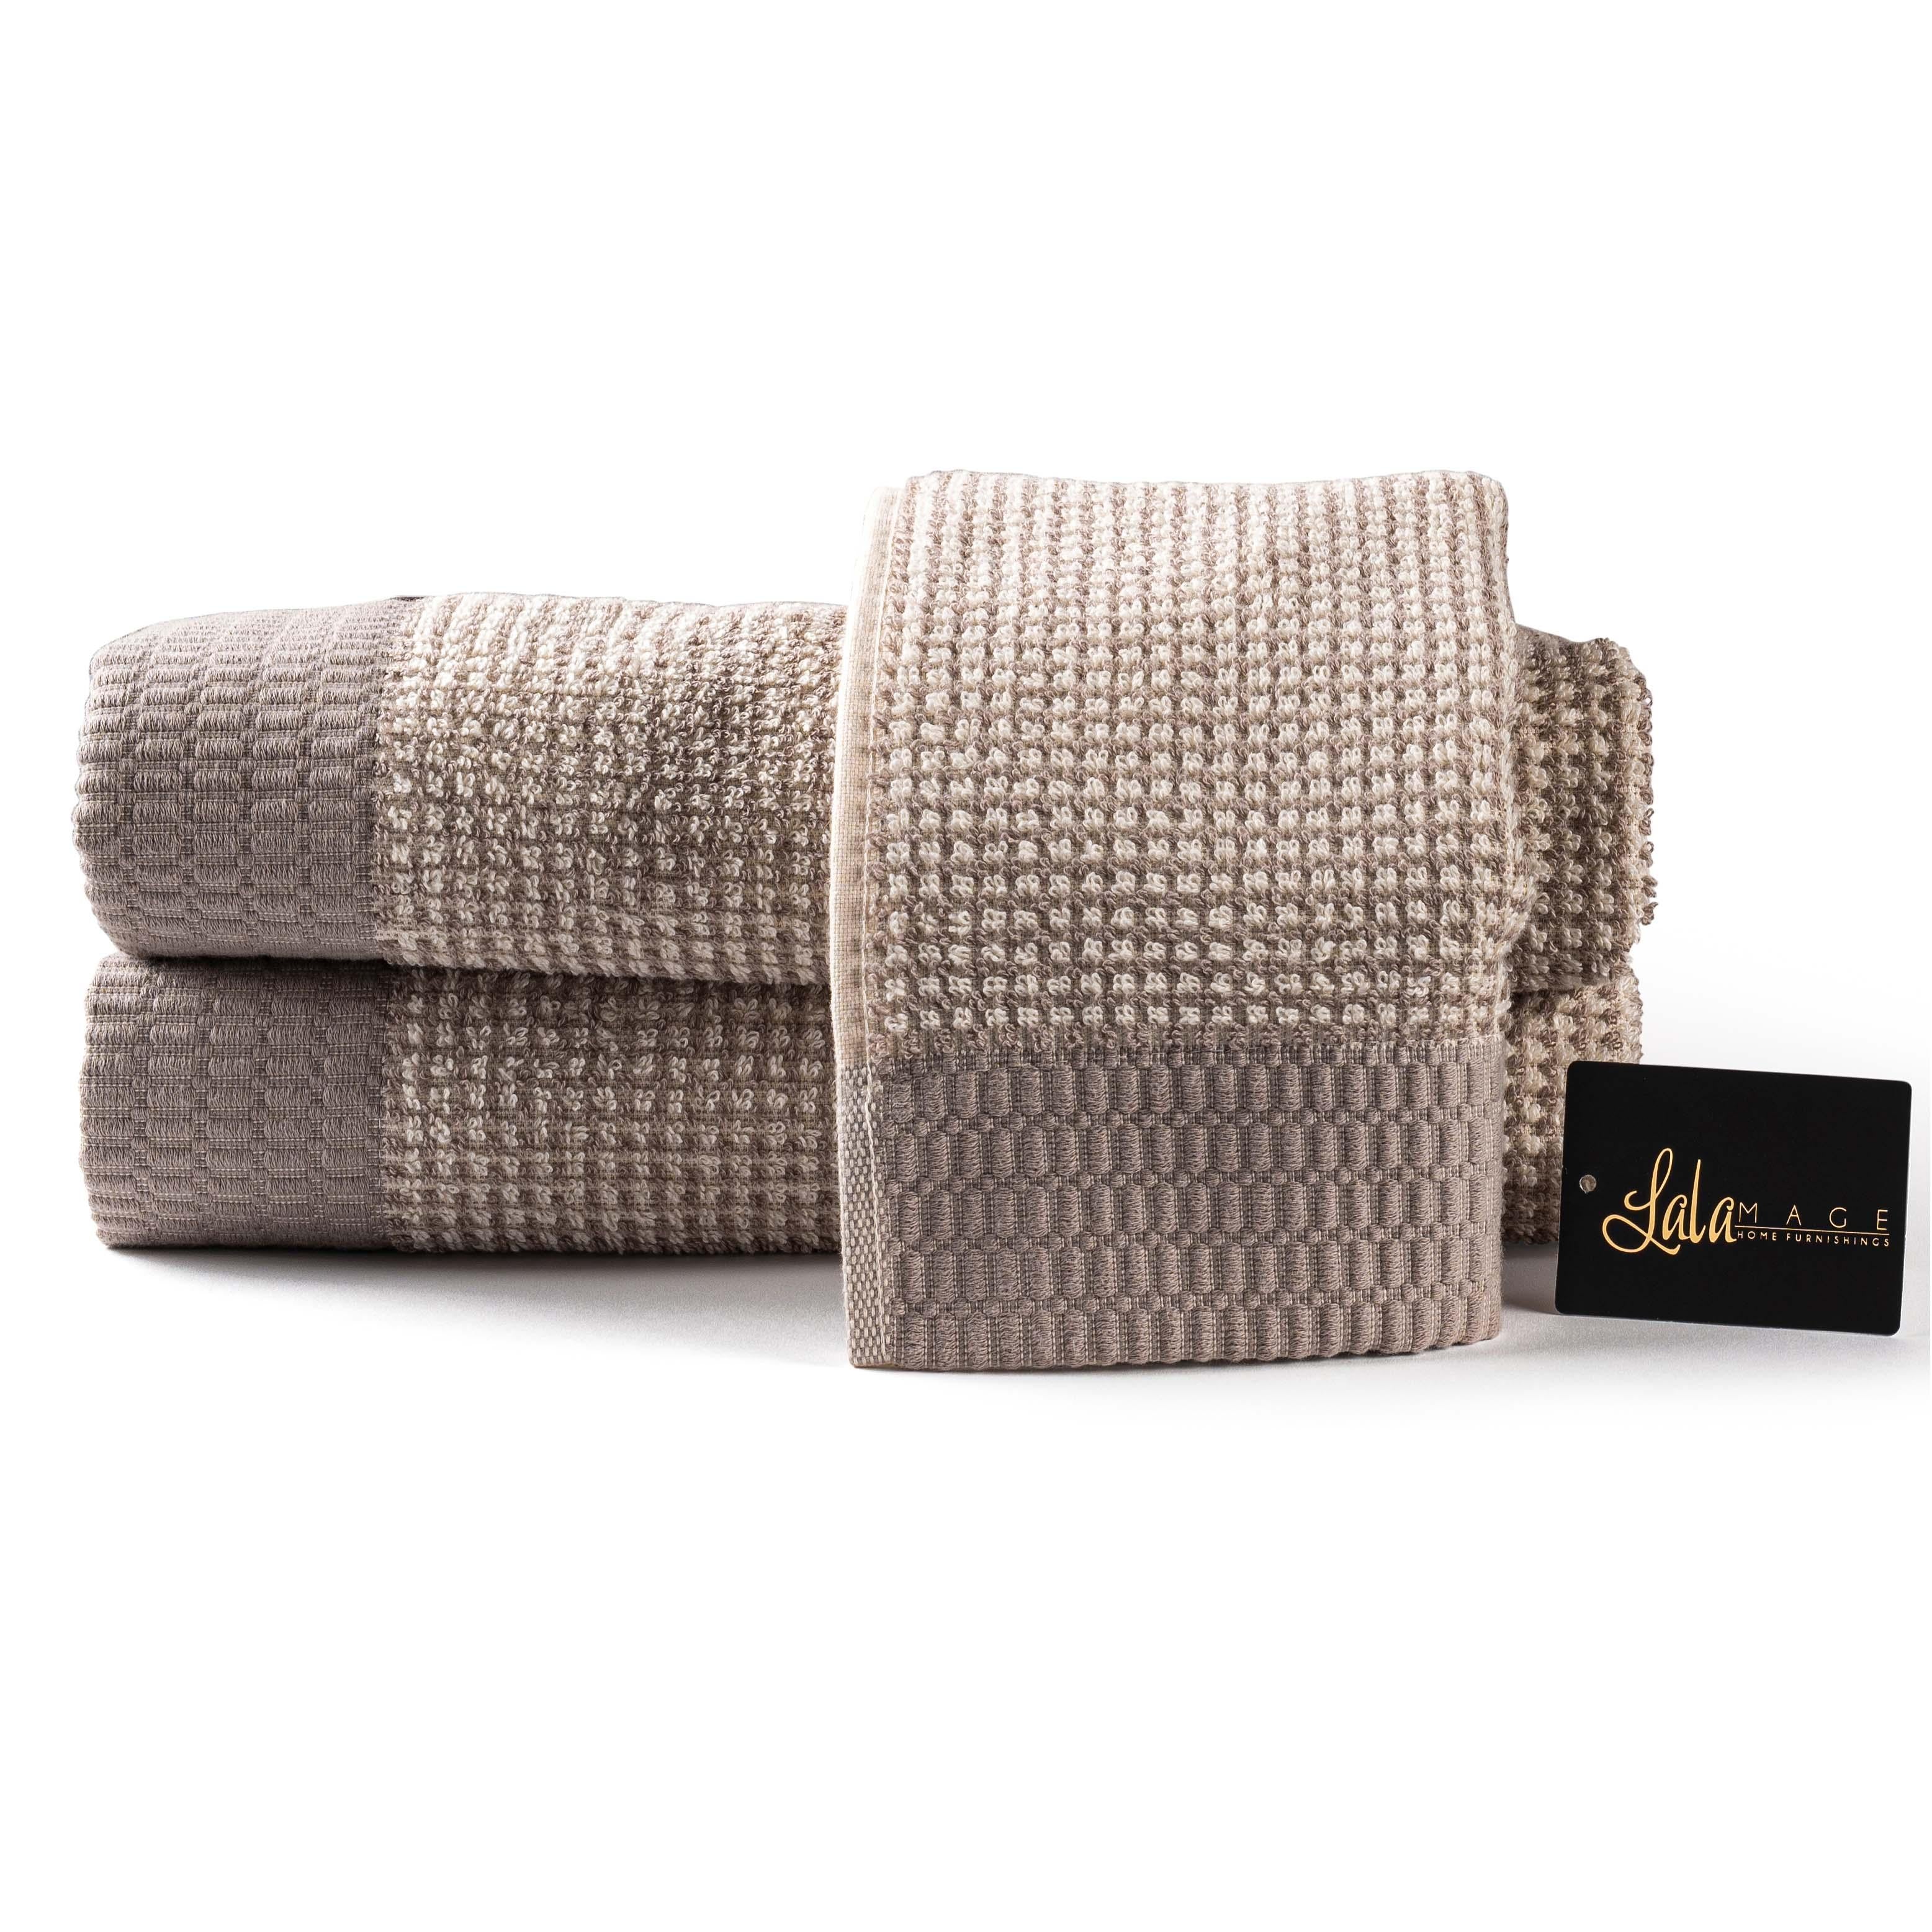 http://elegantlinen.com/cdn/shop/products/madras-reverse-hand-towel-elegant-linen.jpg?v=1700170843